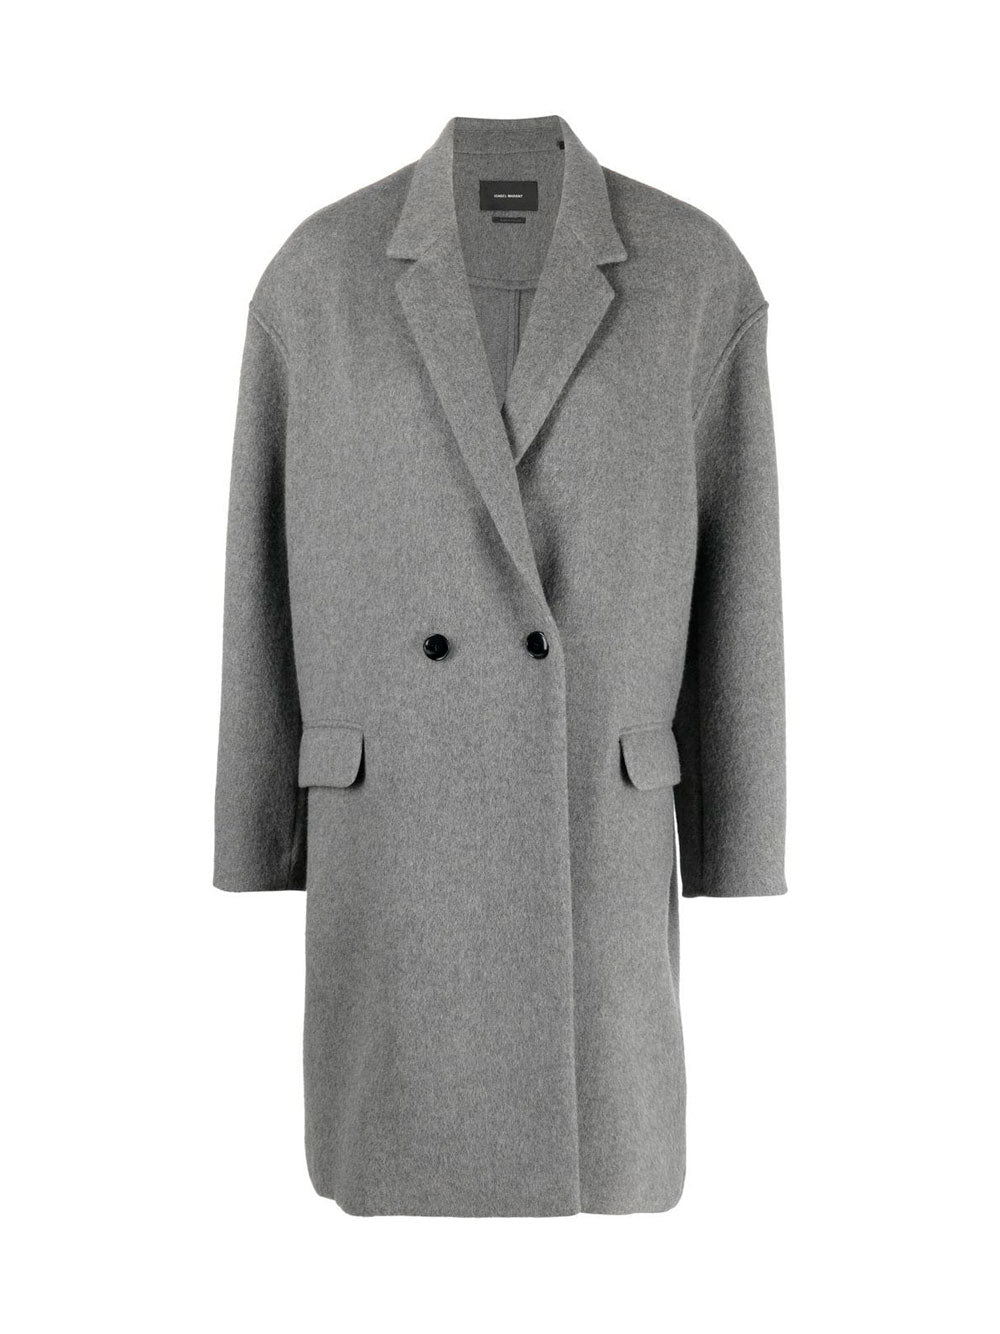 Isabel Marant grey coat 